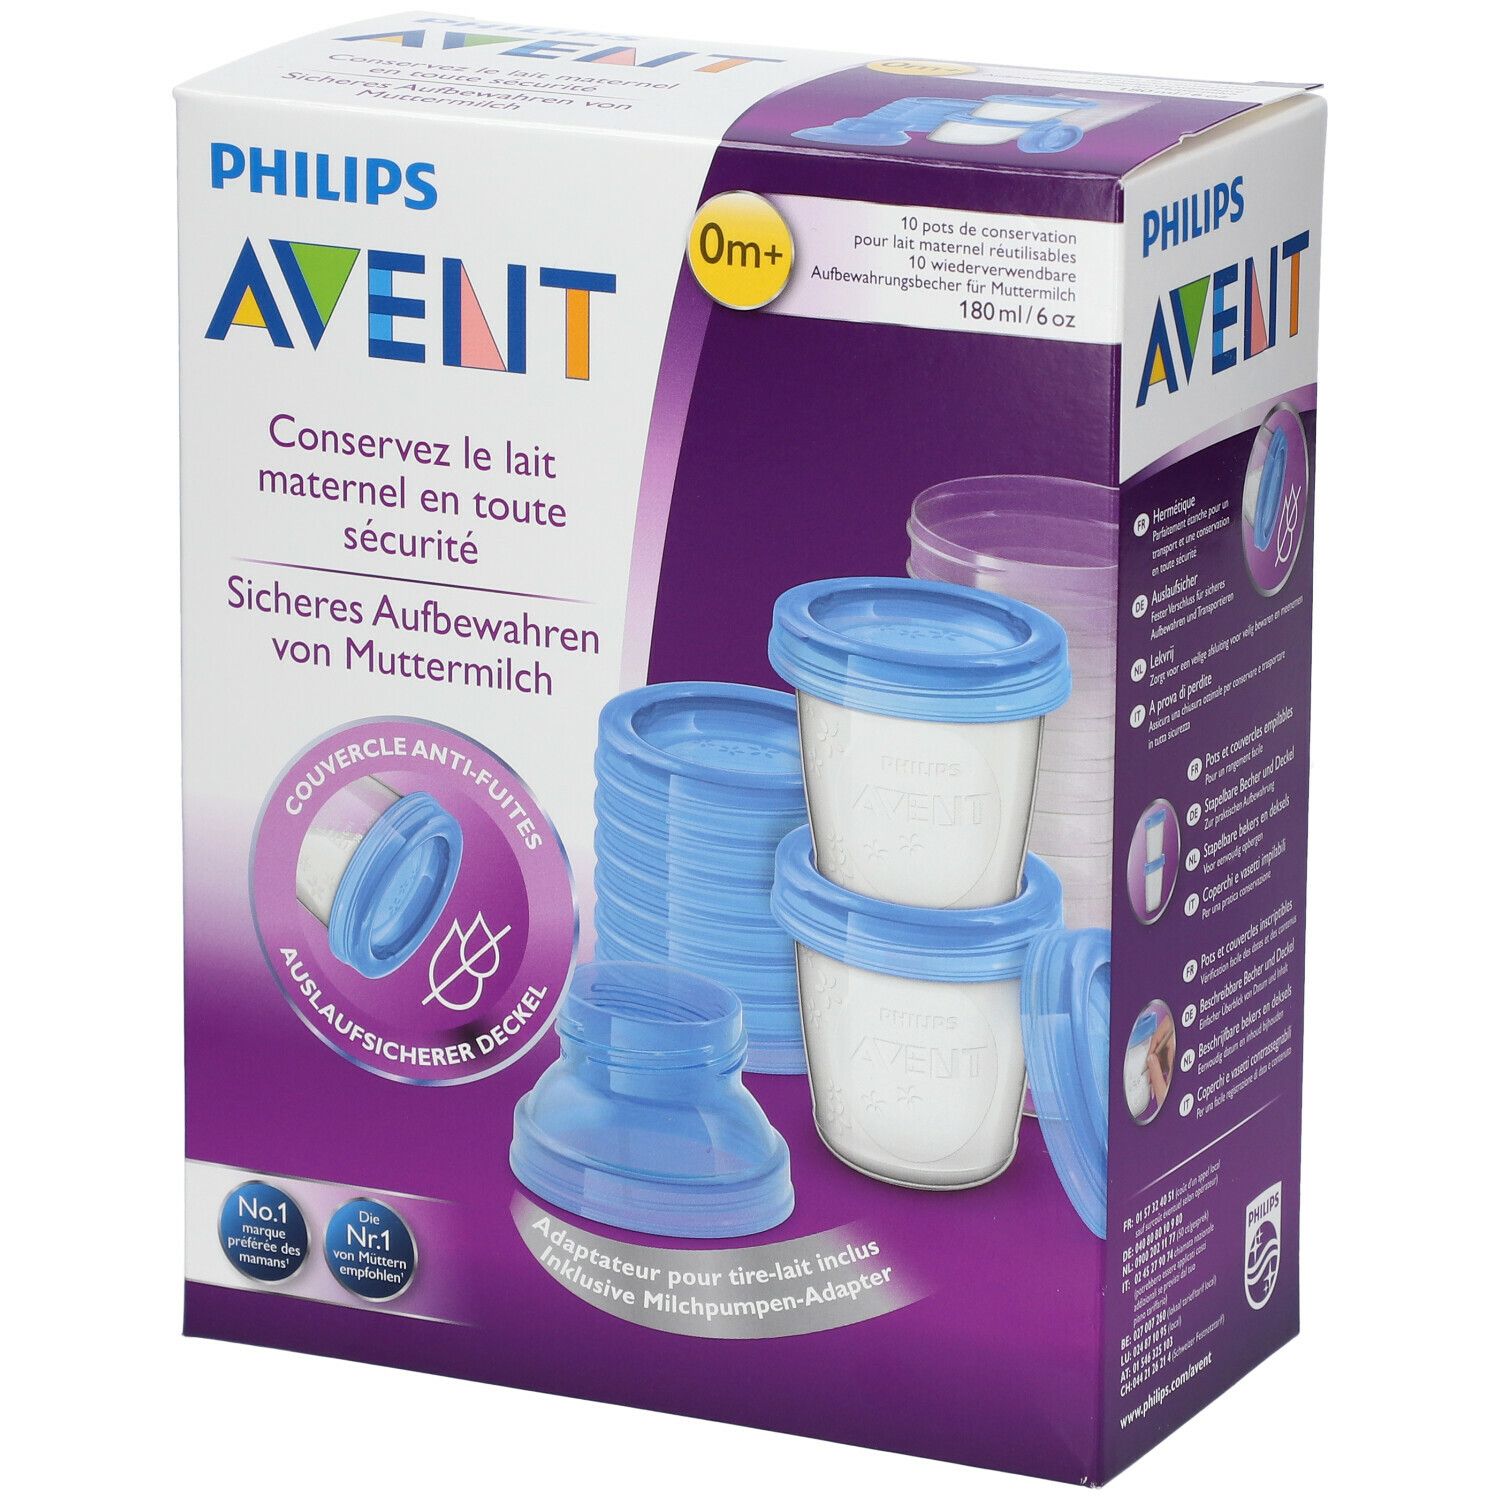 Philips Avent 10 pots de conservation pour le lait maternel 1 pc(s) -  Redcare Pharmacie